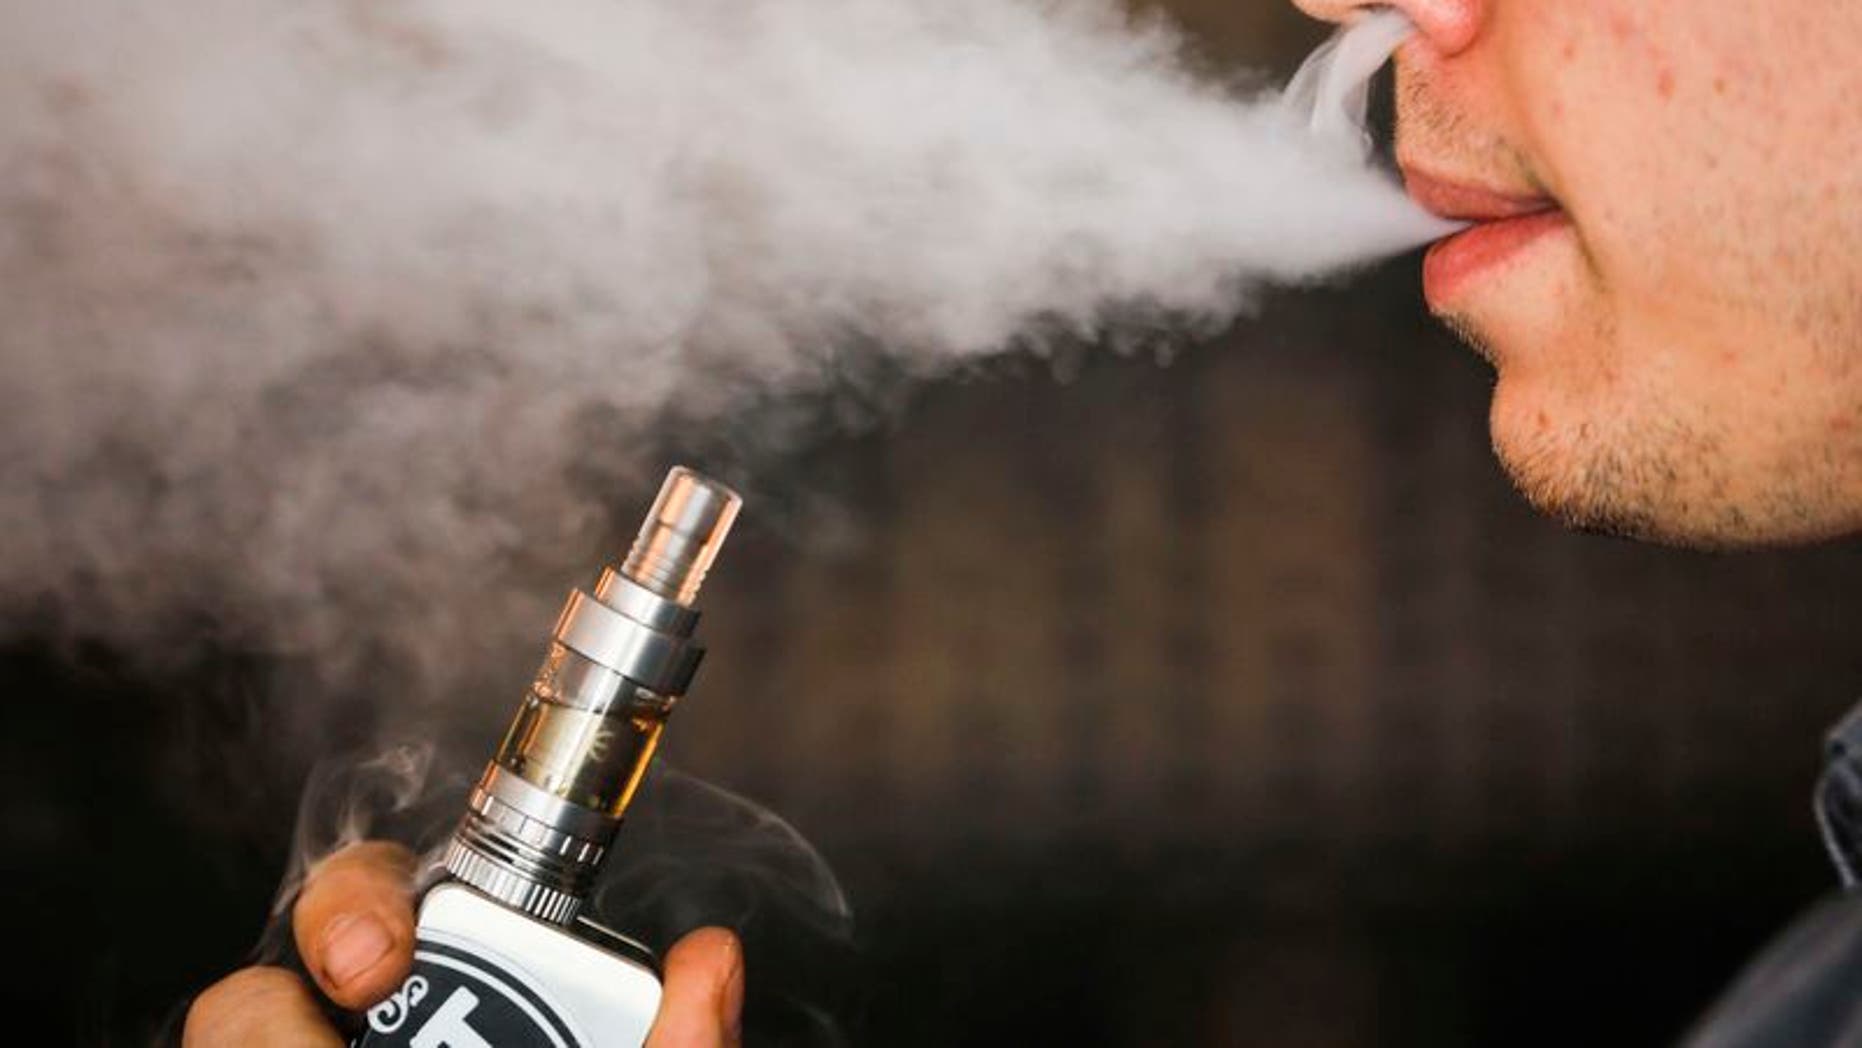 Nicotine found in e-cigarettes